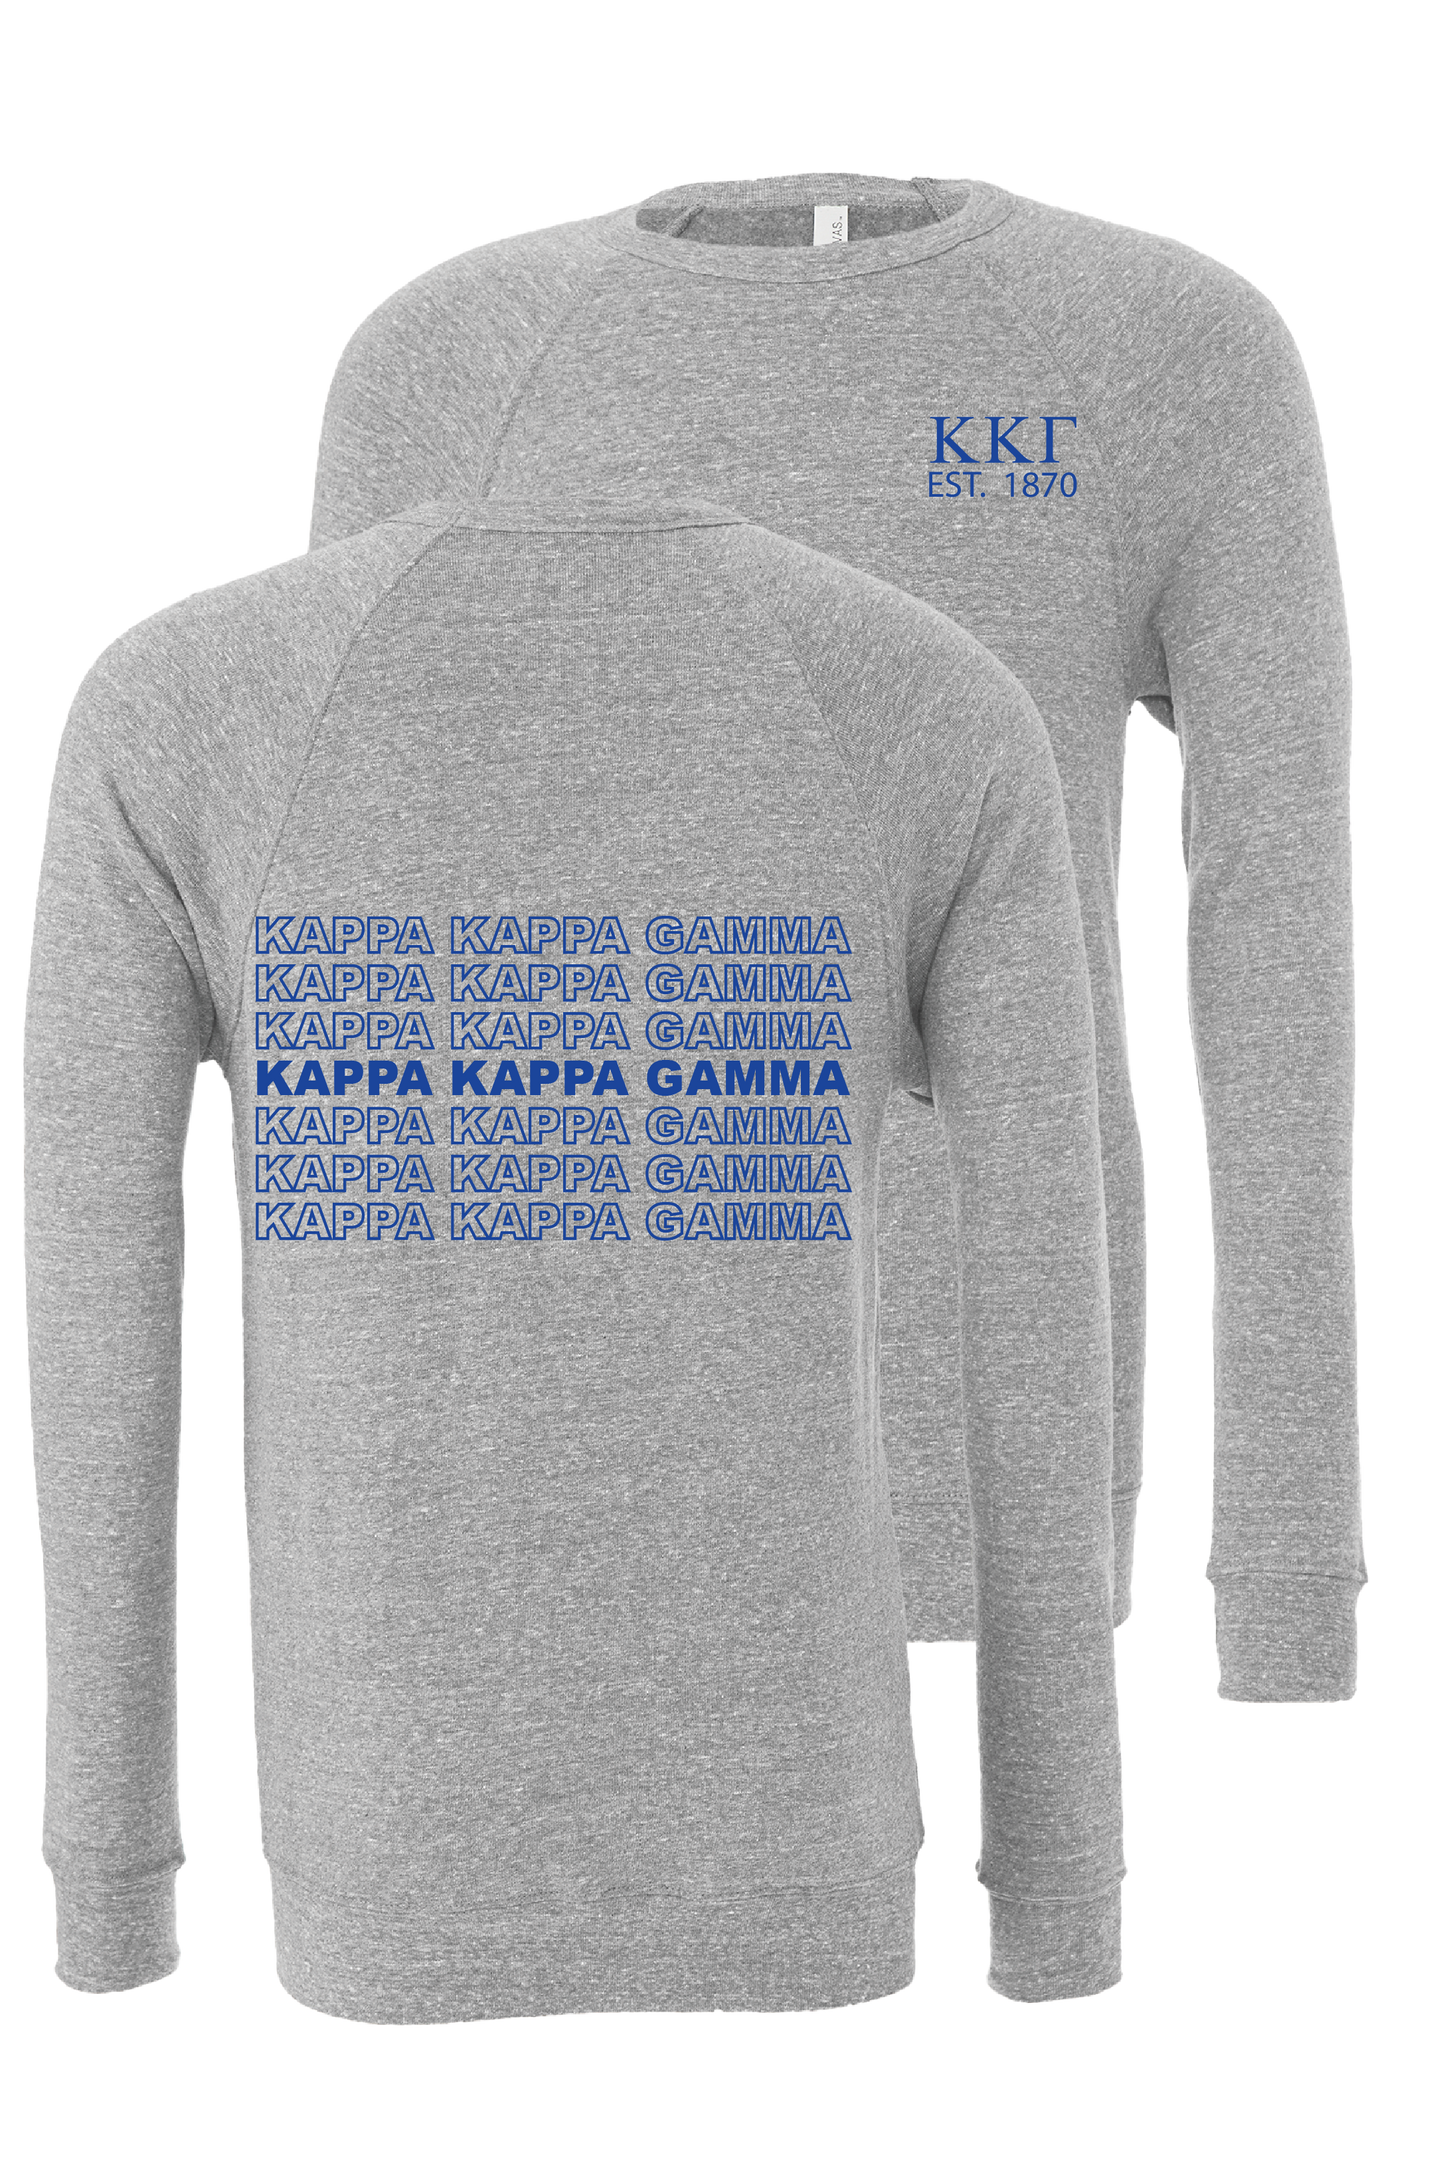 Kappa Kappa Gamma Repeating Name Crewneck Sweatshirts